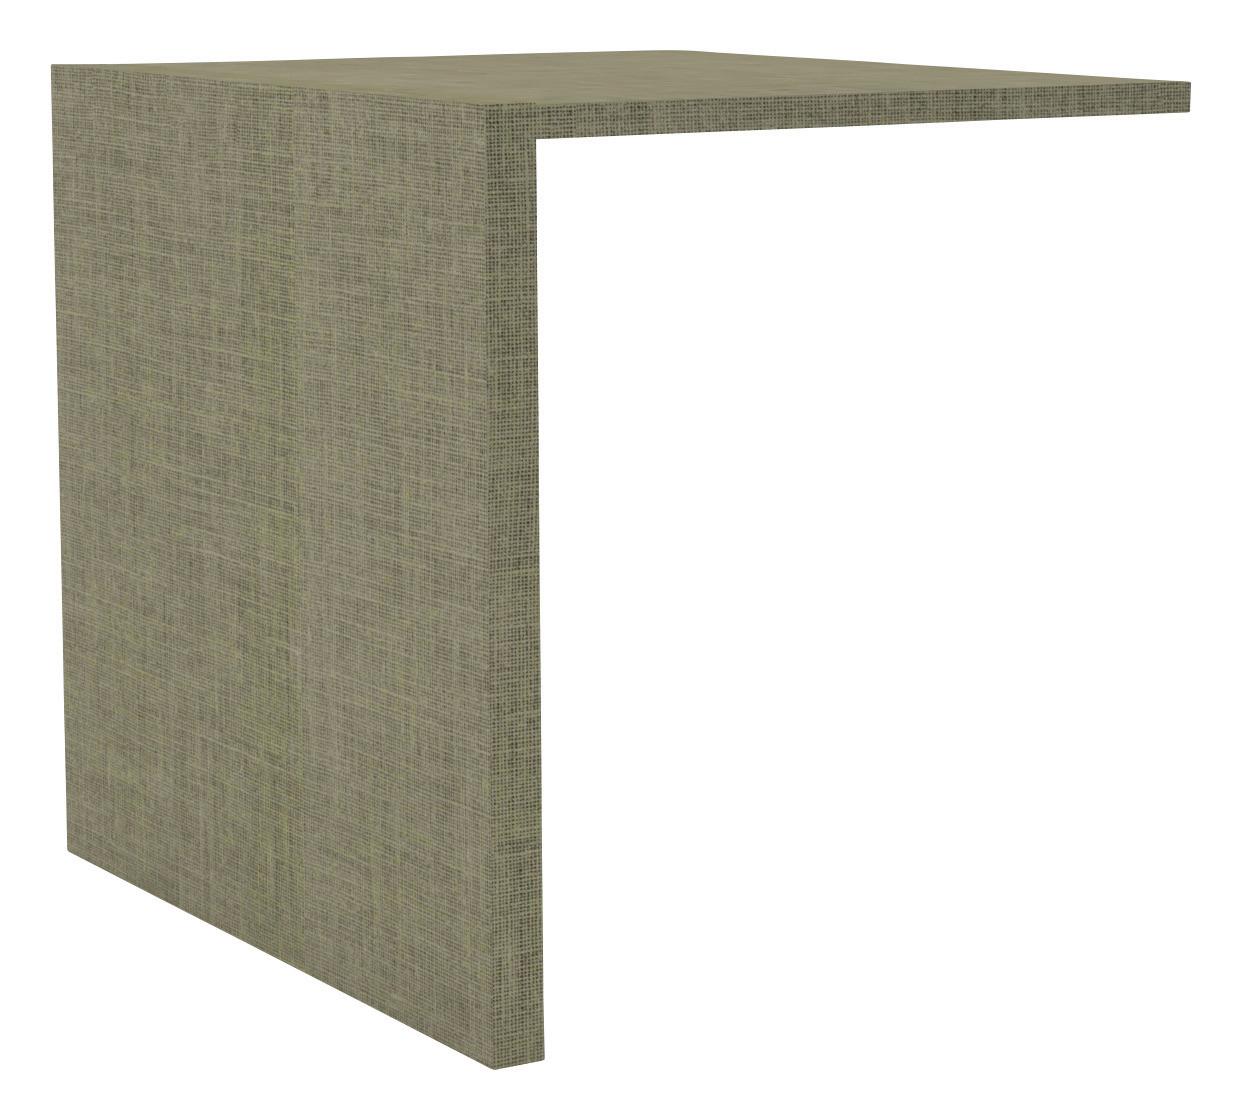 Notranja Razdelitev Unit - rjava, Moderno, leseni material (46,5/52/54,4cm) - Based